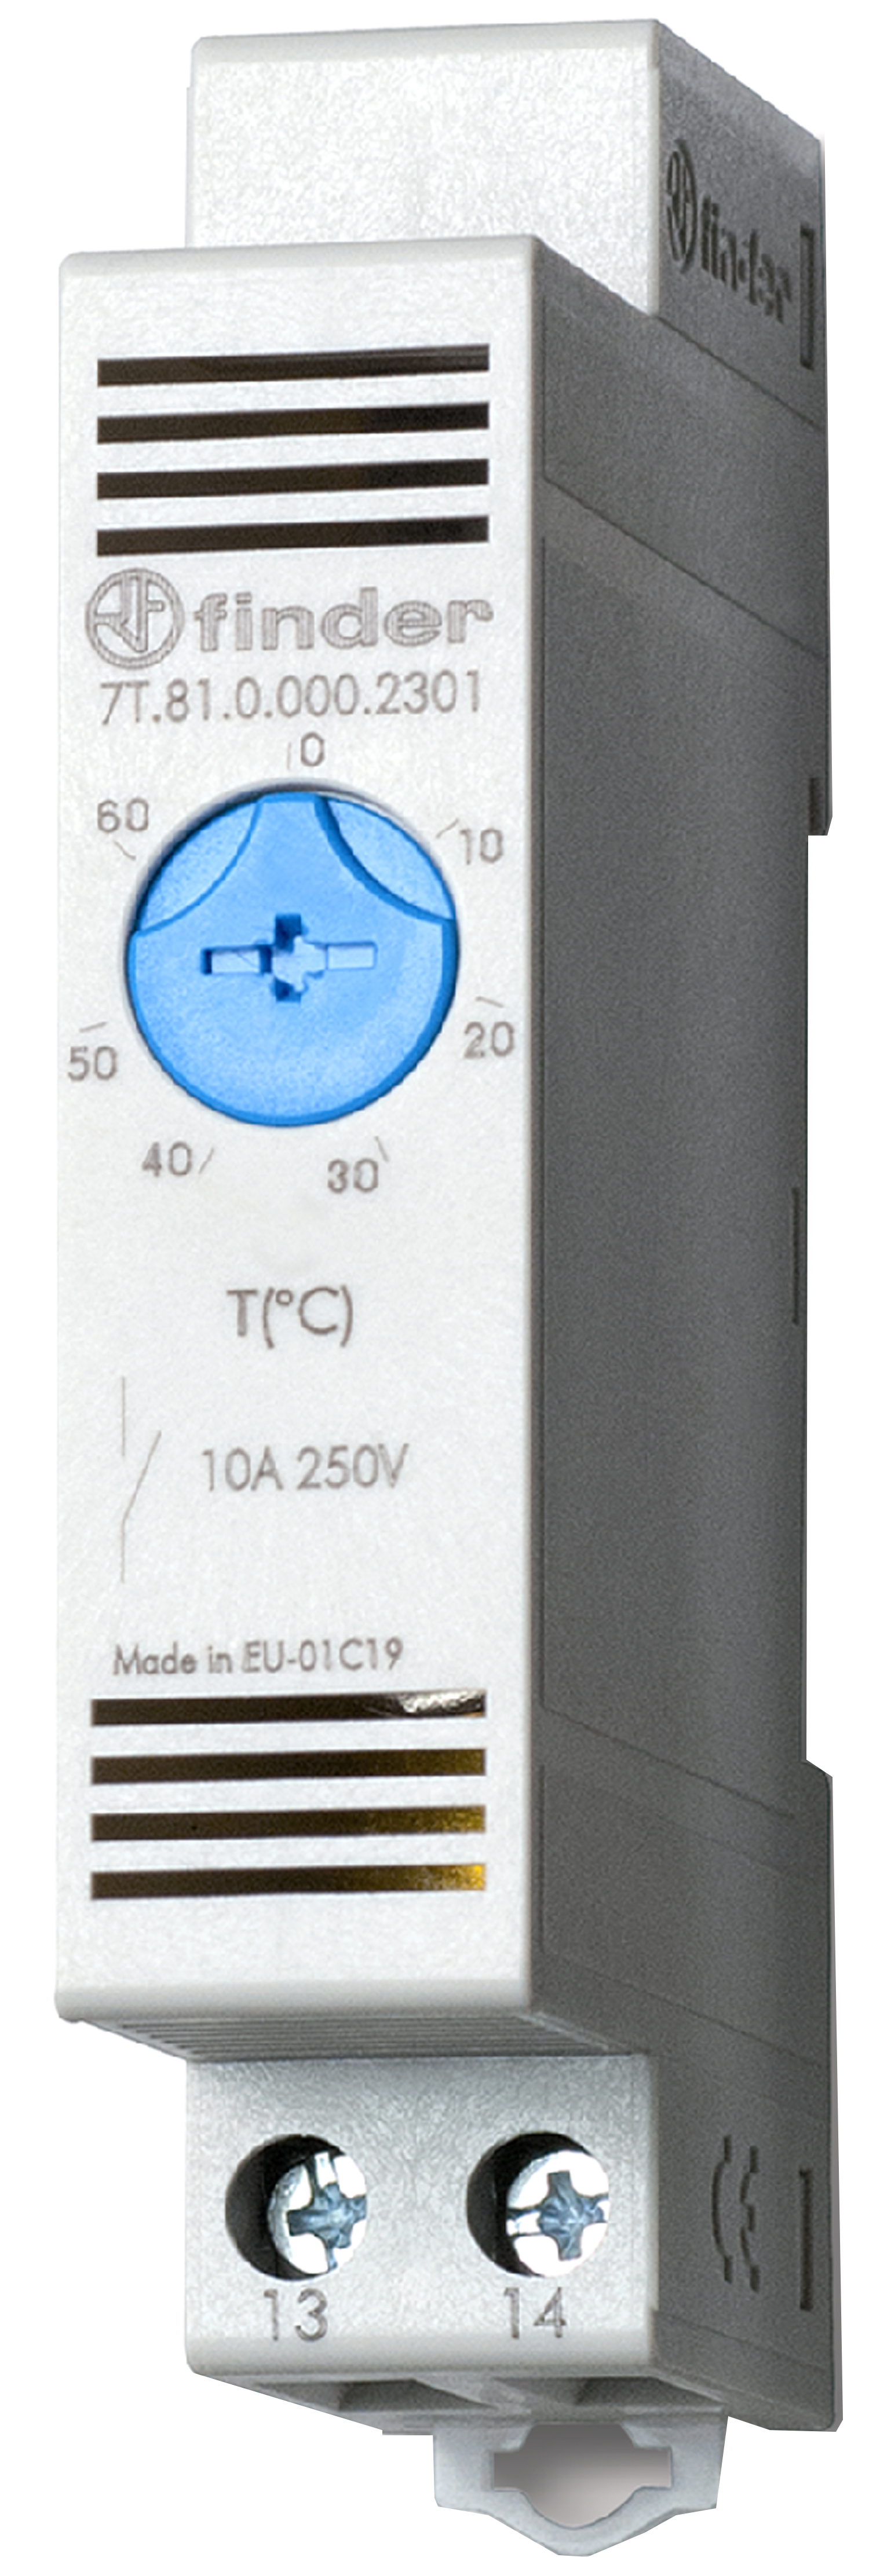 Thermostat für Schaltschrank, Reiheneinbaugerät 17,5 mm breit, 1 Schließer 10 A, einstellbar von -20